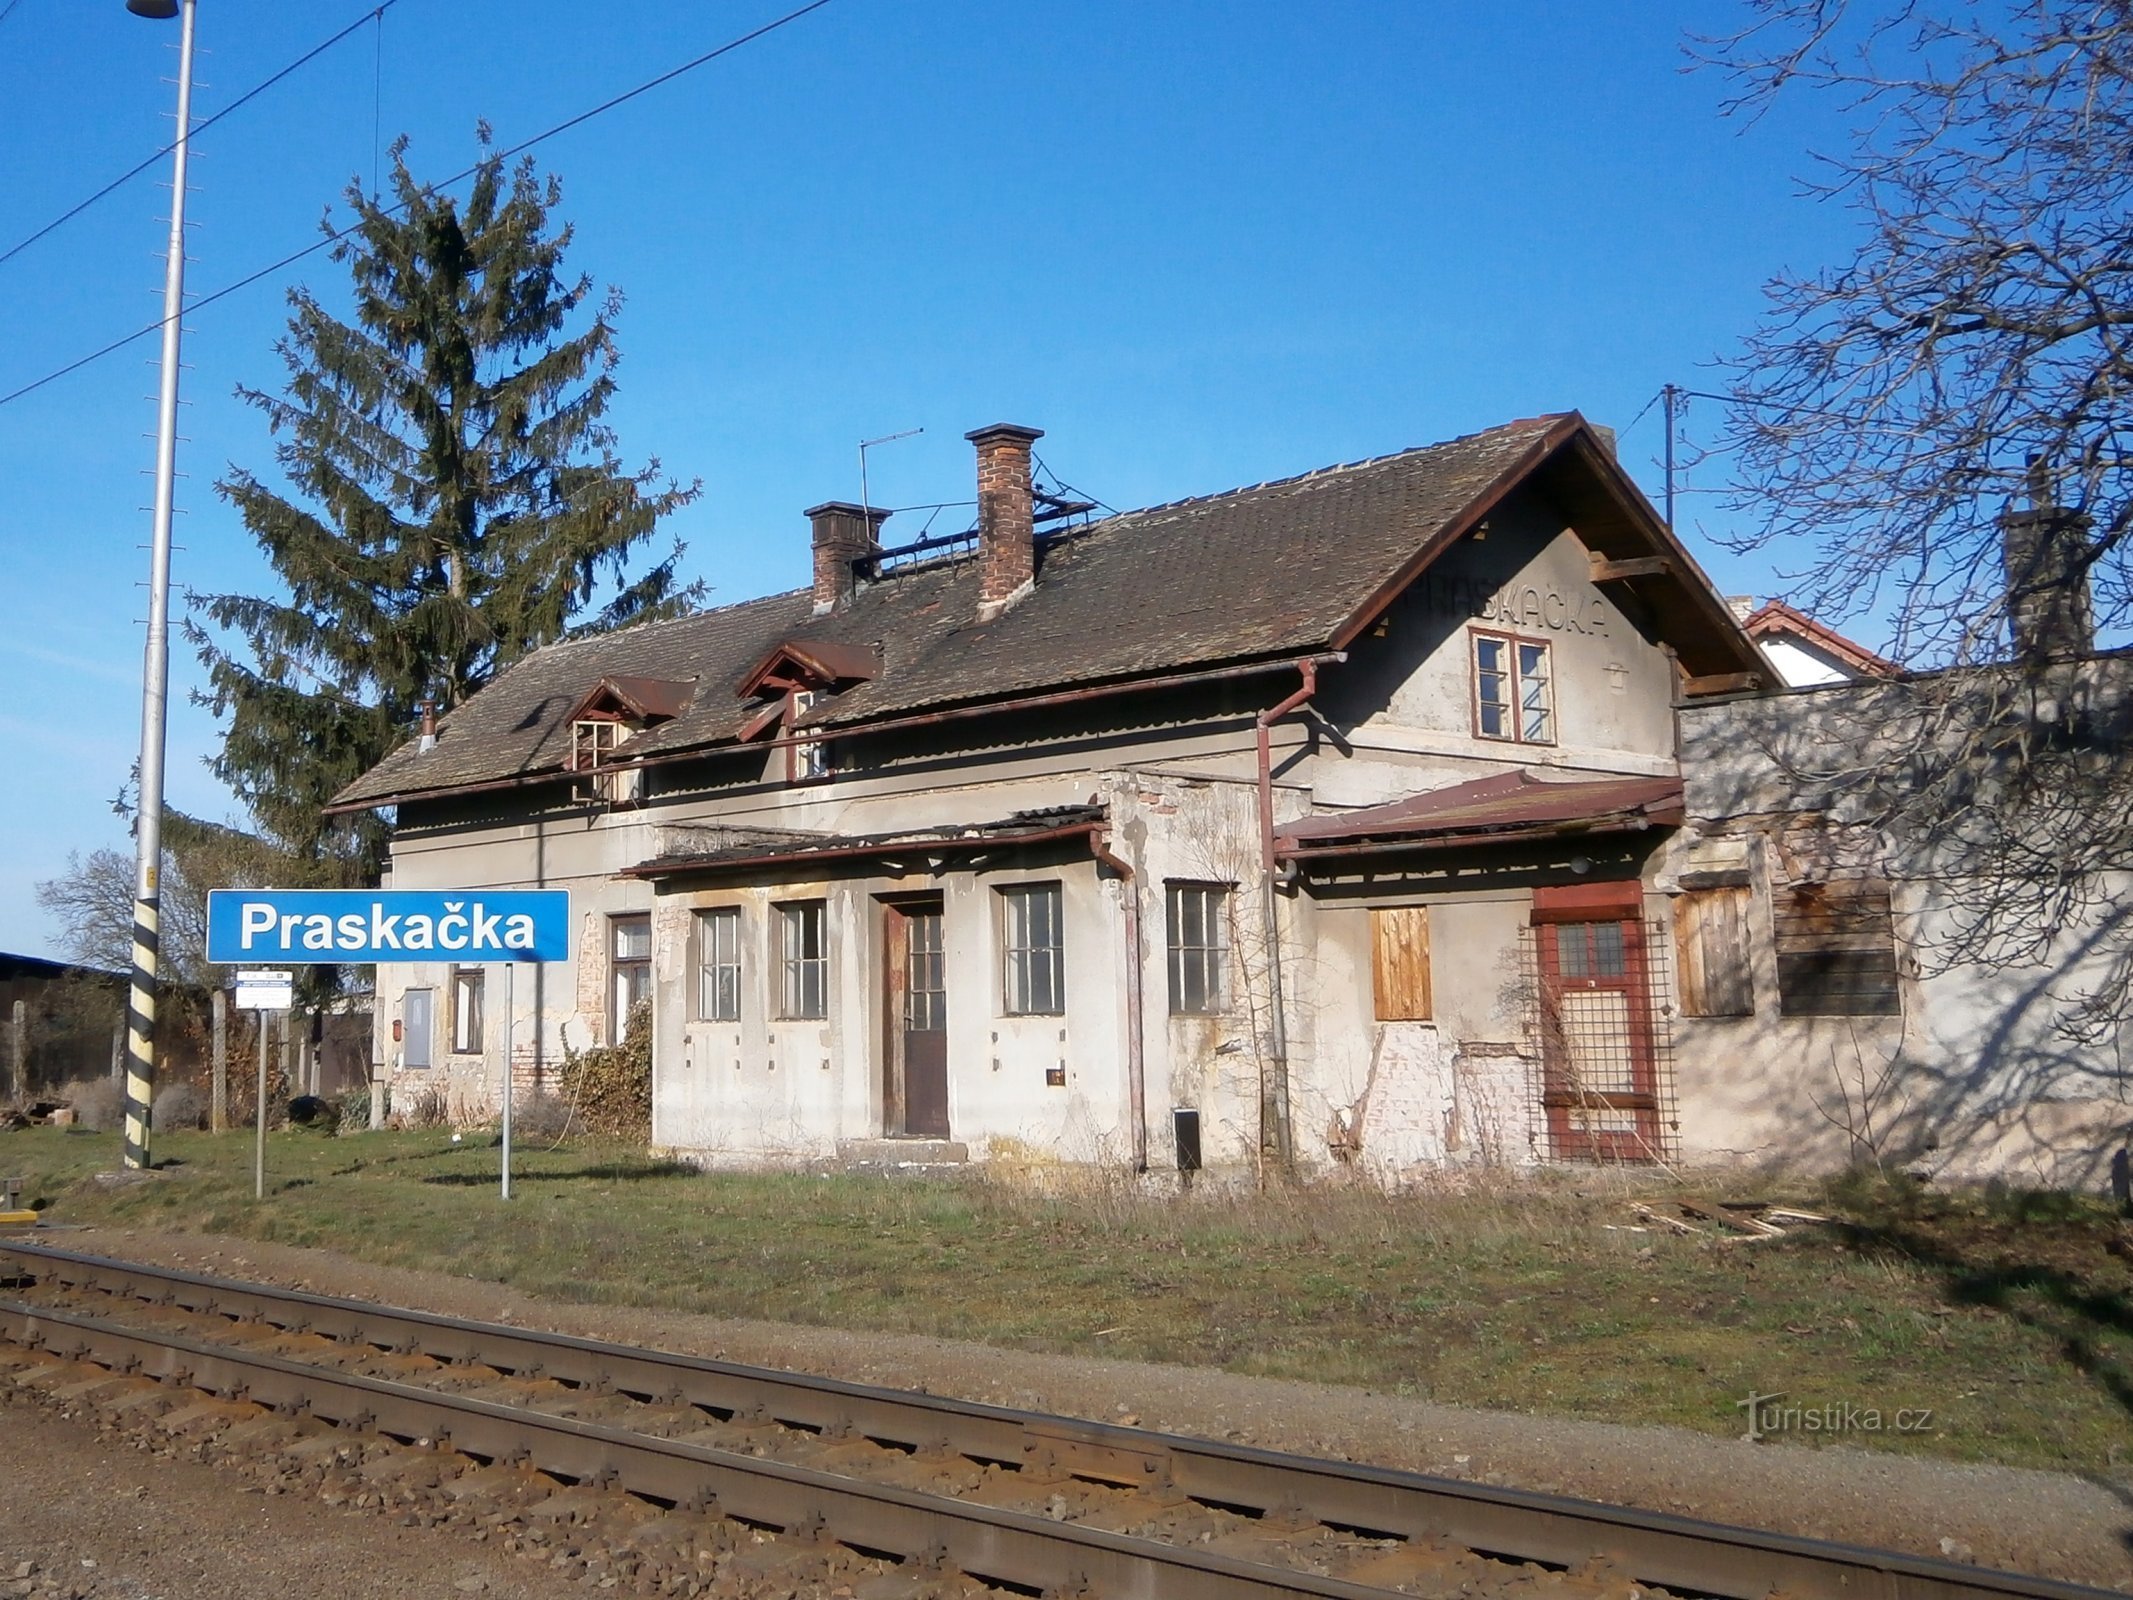 Старий вокзал на Праскачці